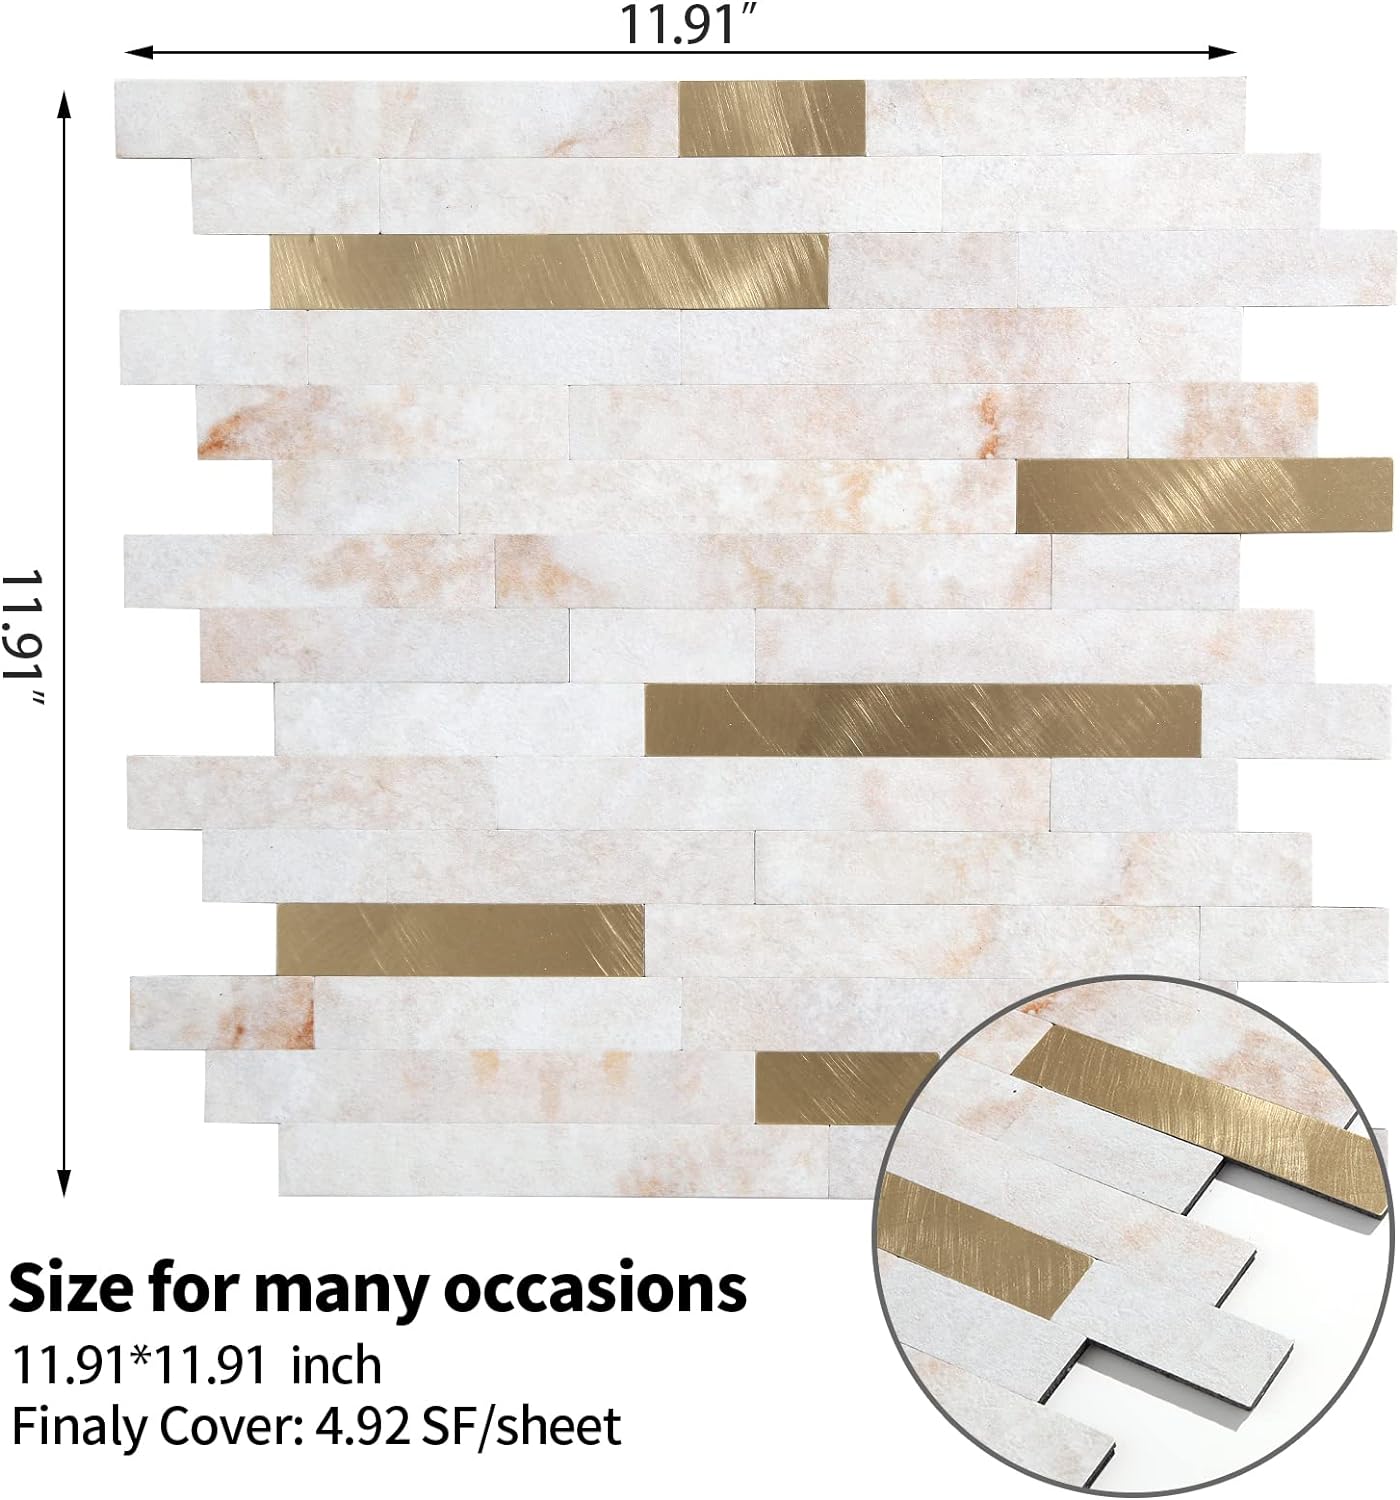 PVC backsplash tile size image Linear Blend in Brilliance with Gold